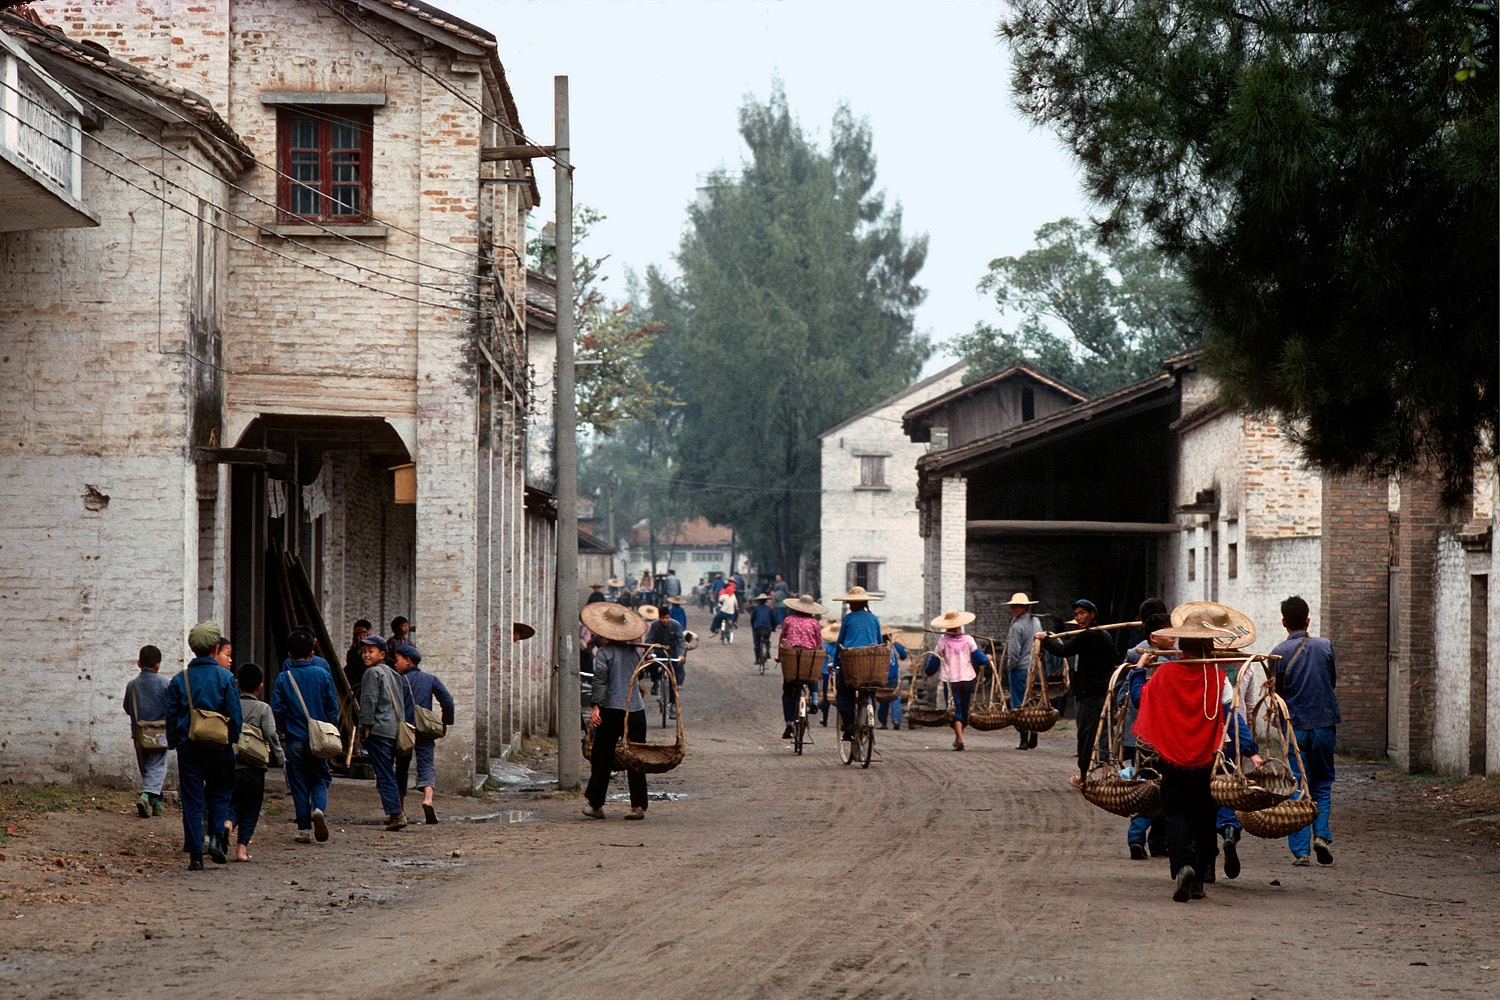 bill-hocker-commune-street-fushan-china-1979